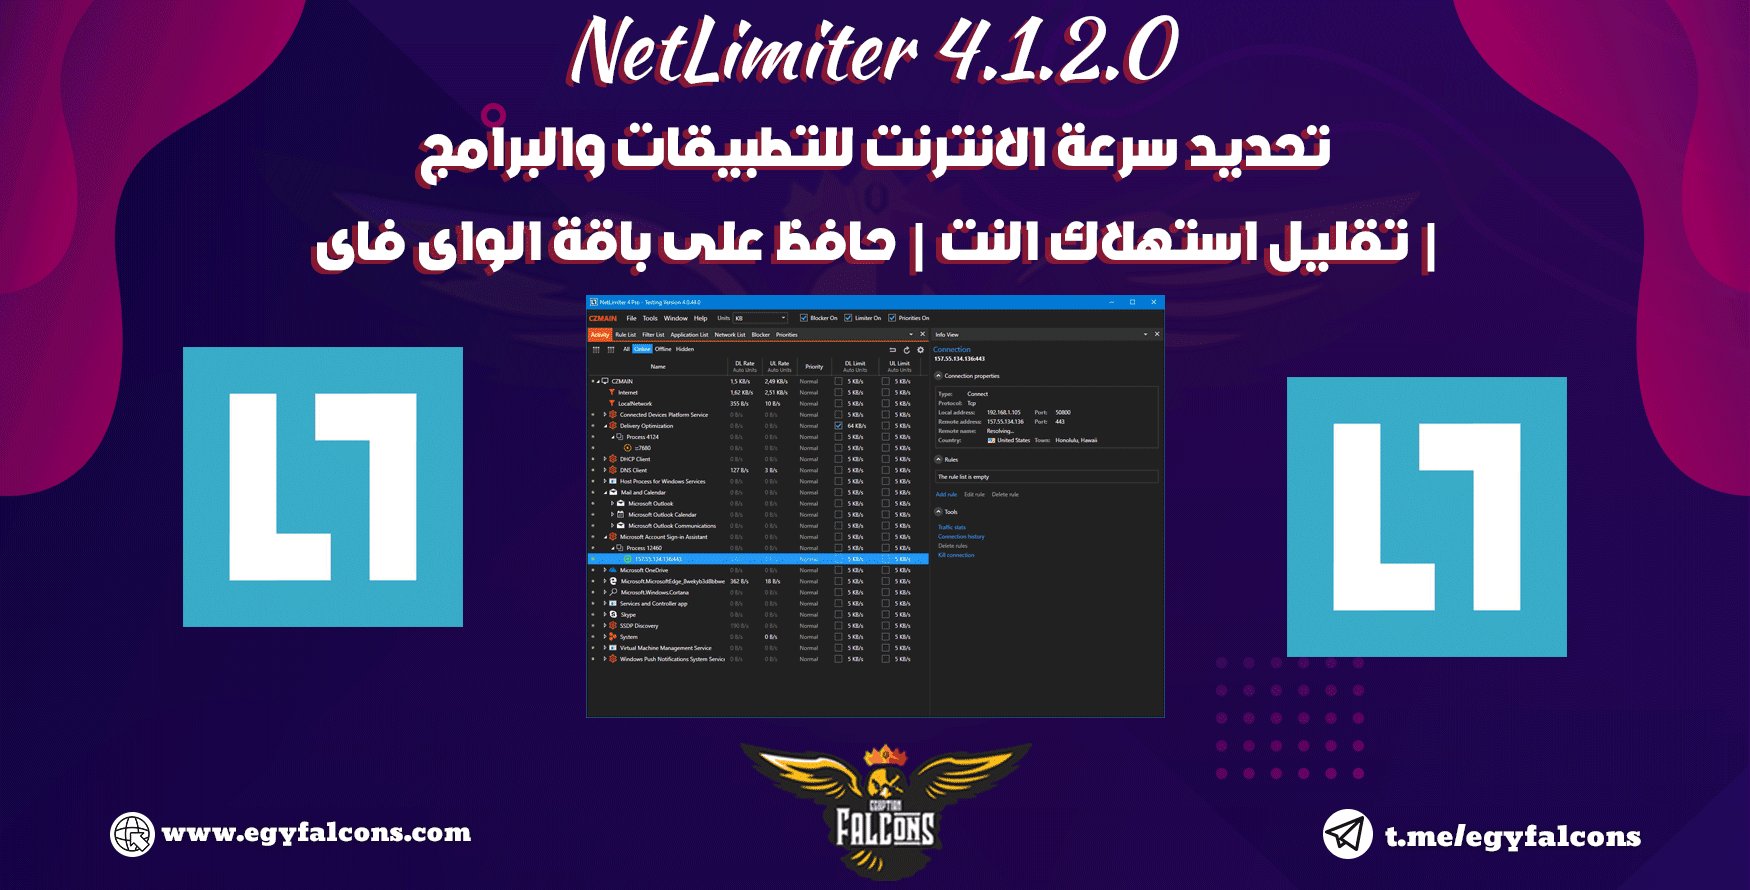 NetLimiter 4 تحديد سرعة الانترنت للتطبيقات والبرامج | تقليل استهلاك النت | حافظ على باقة الواى فاى